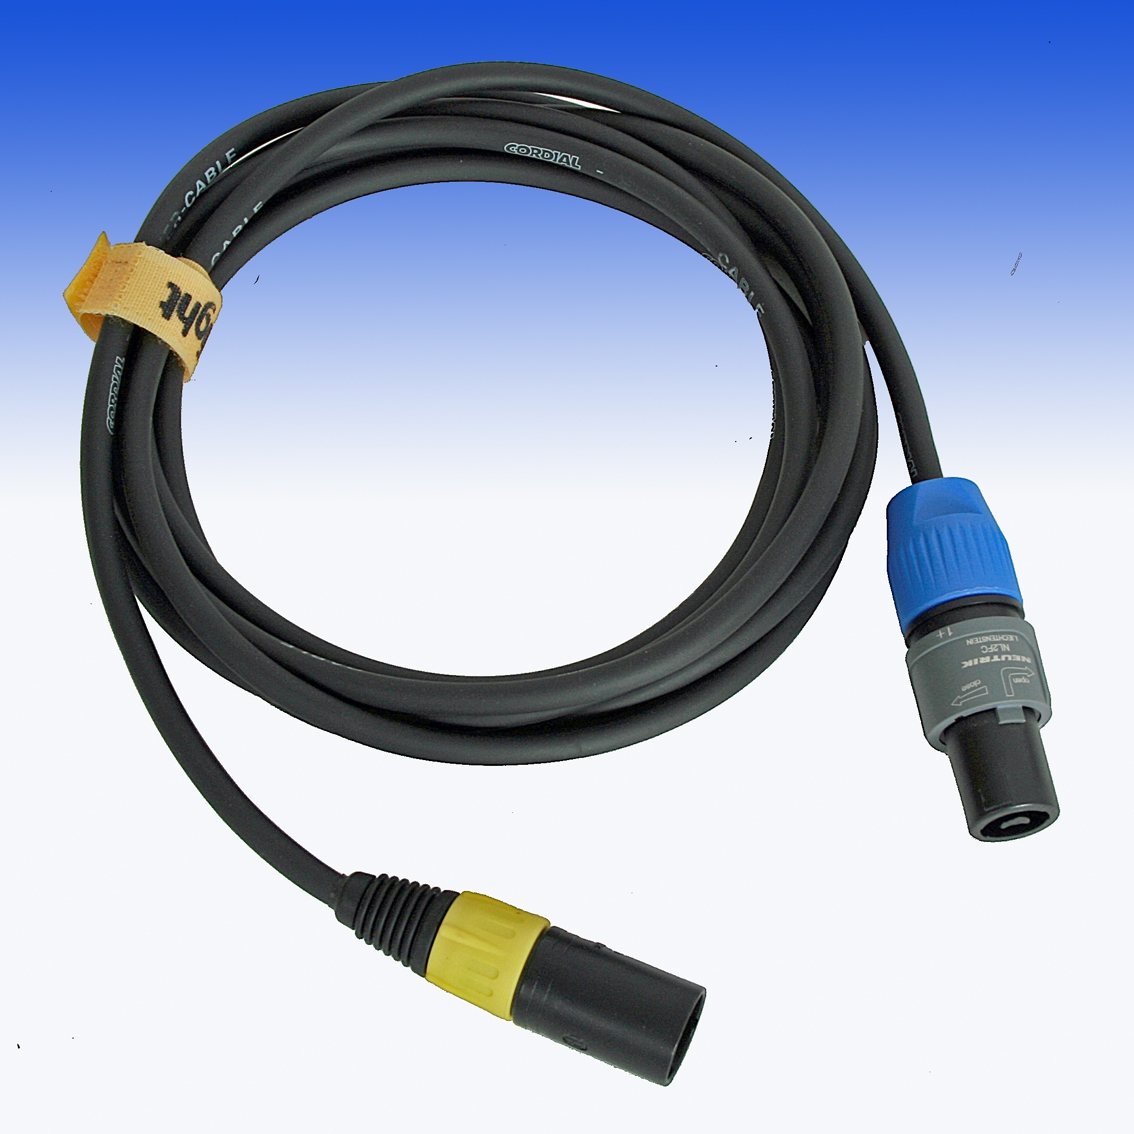 DPOW3XLR-SPEAK Kabel mit 3XLR und Neutrik SpeakON Anschlüssen